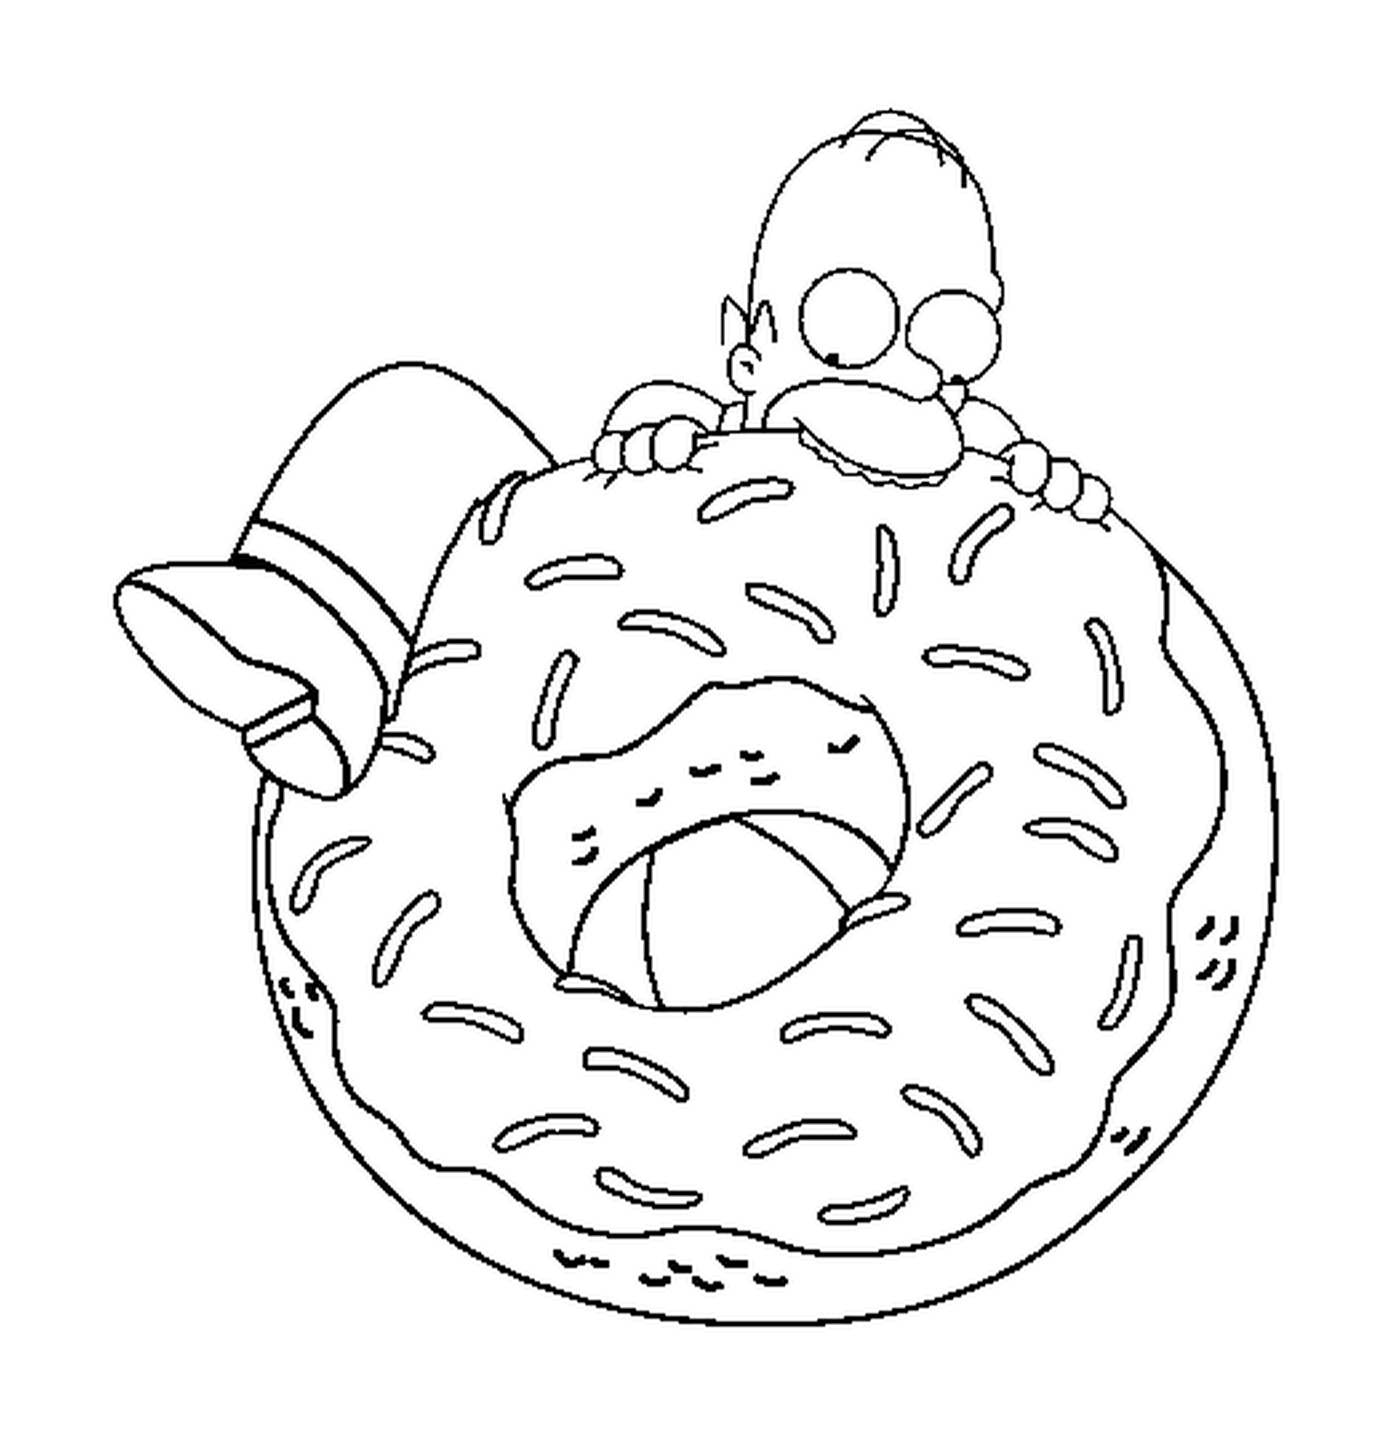  Homer versucht, einen riesigen Donut zu essen 